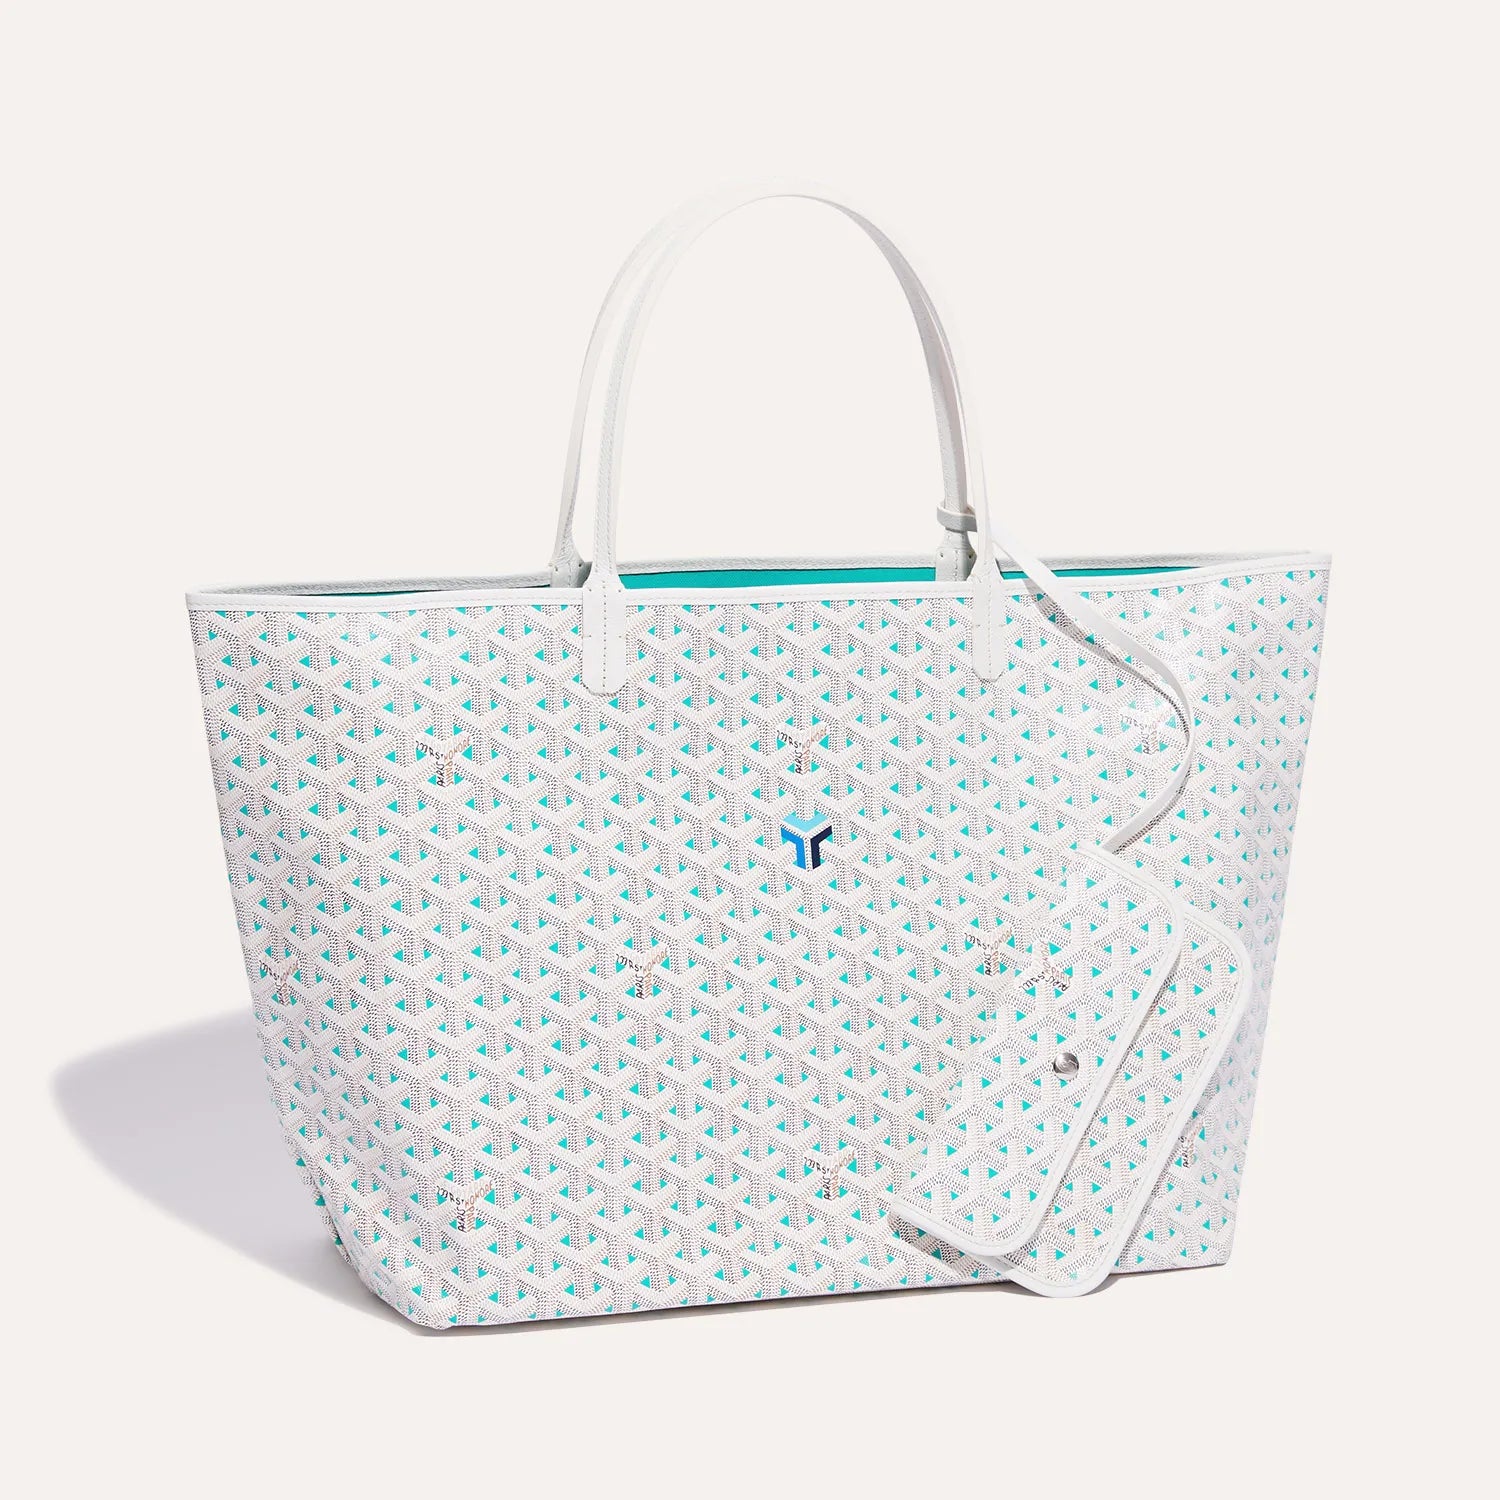 Saint Louis Claire-Voie GM Bag – Lux Afrique Boutique